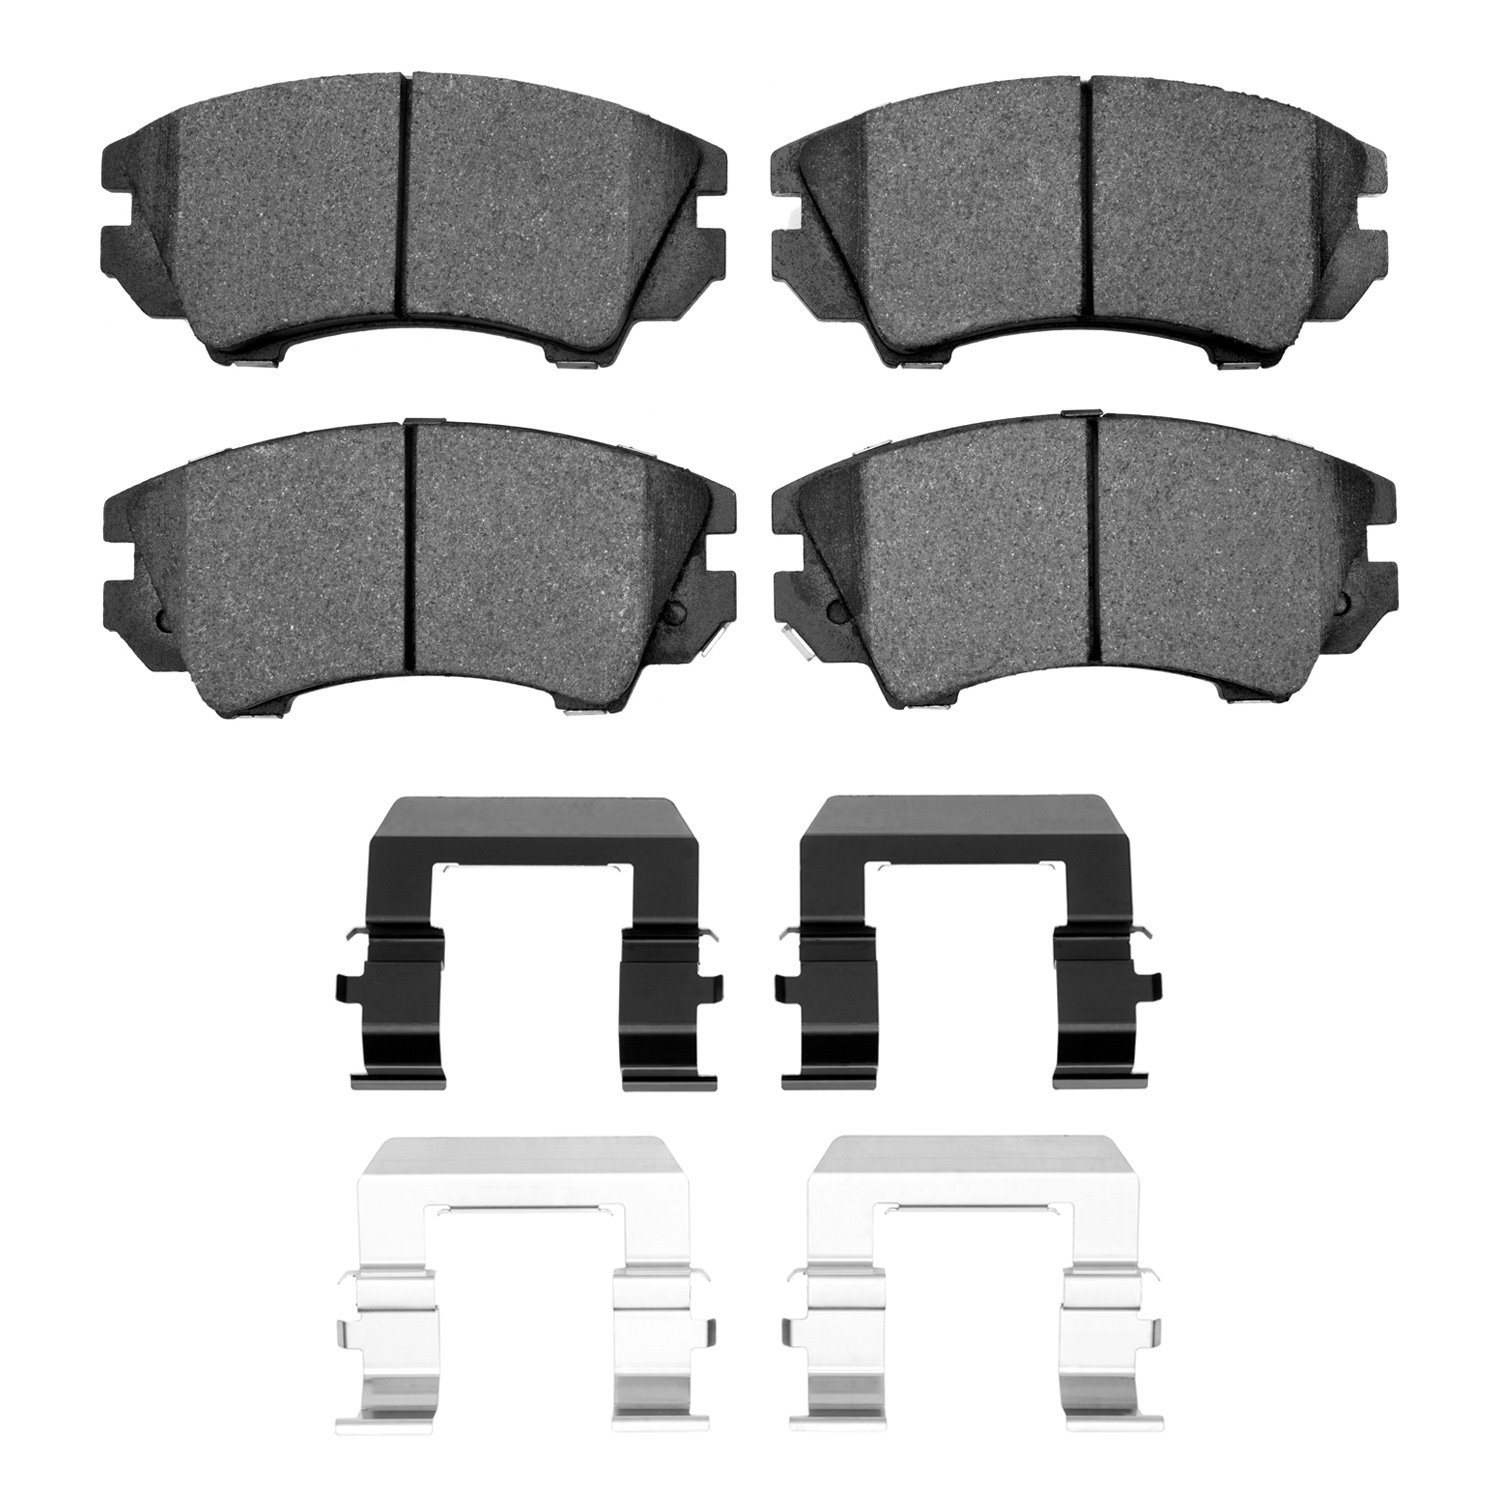 1600-1404-01 5000 Euro Ceramic Brake Pads & Hardware Kit, 2010-2017 GM, Position: Front